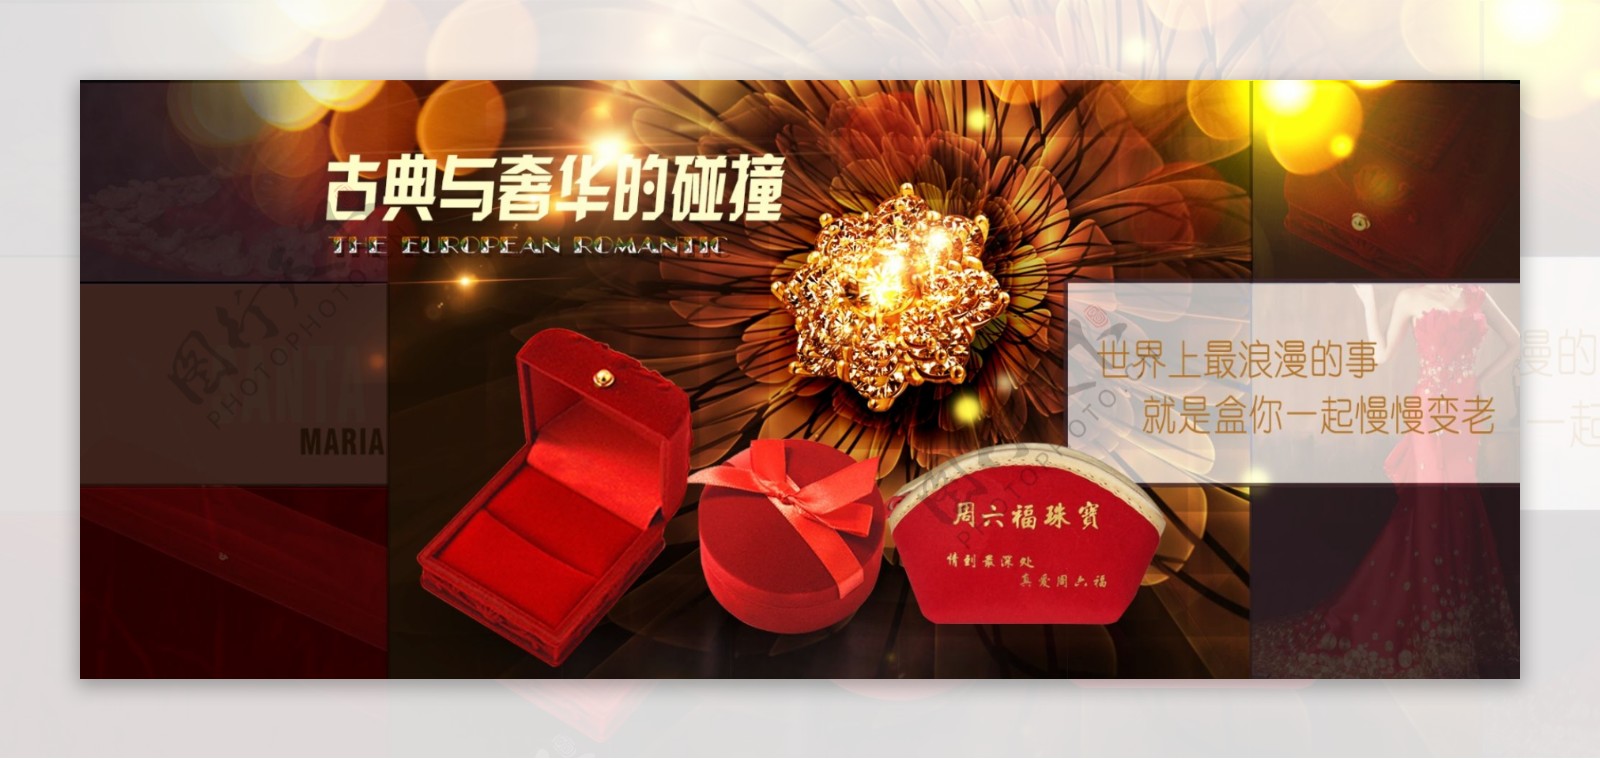 中式风格手饰盒海报